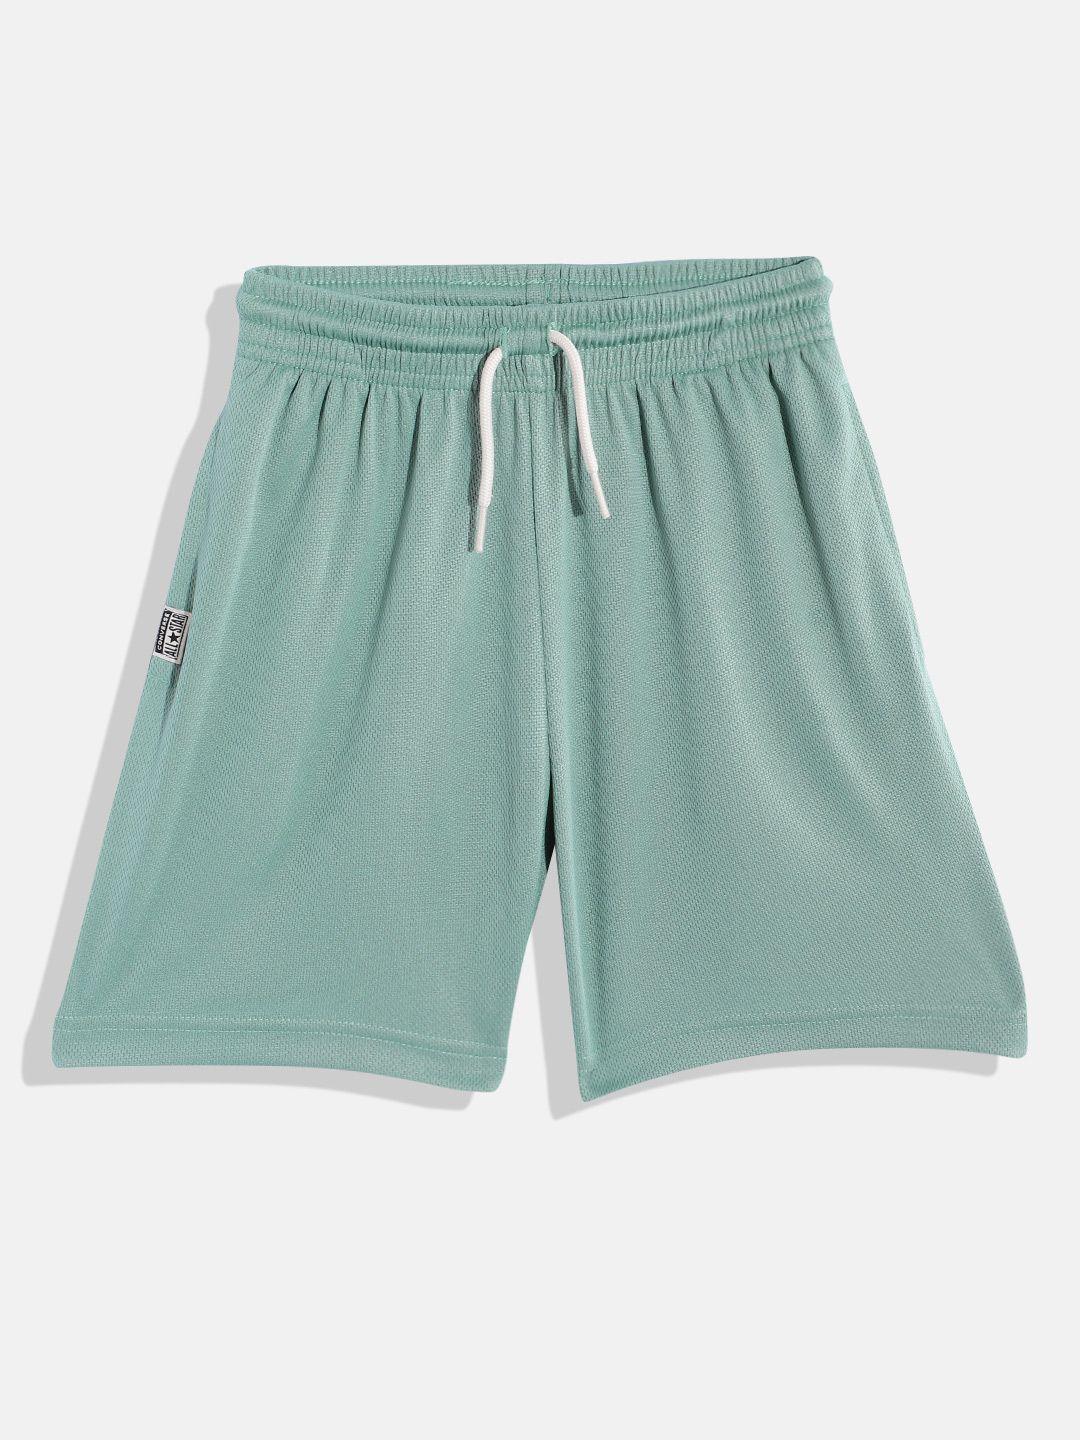 converse-boys-green-shorts